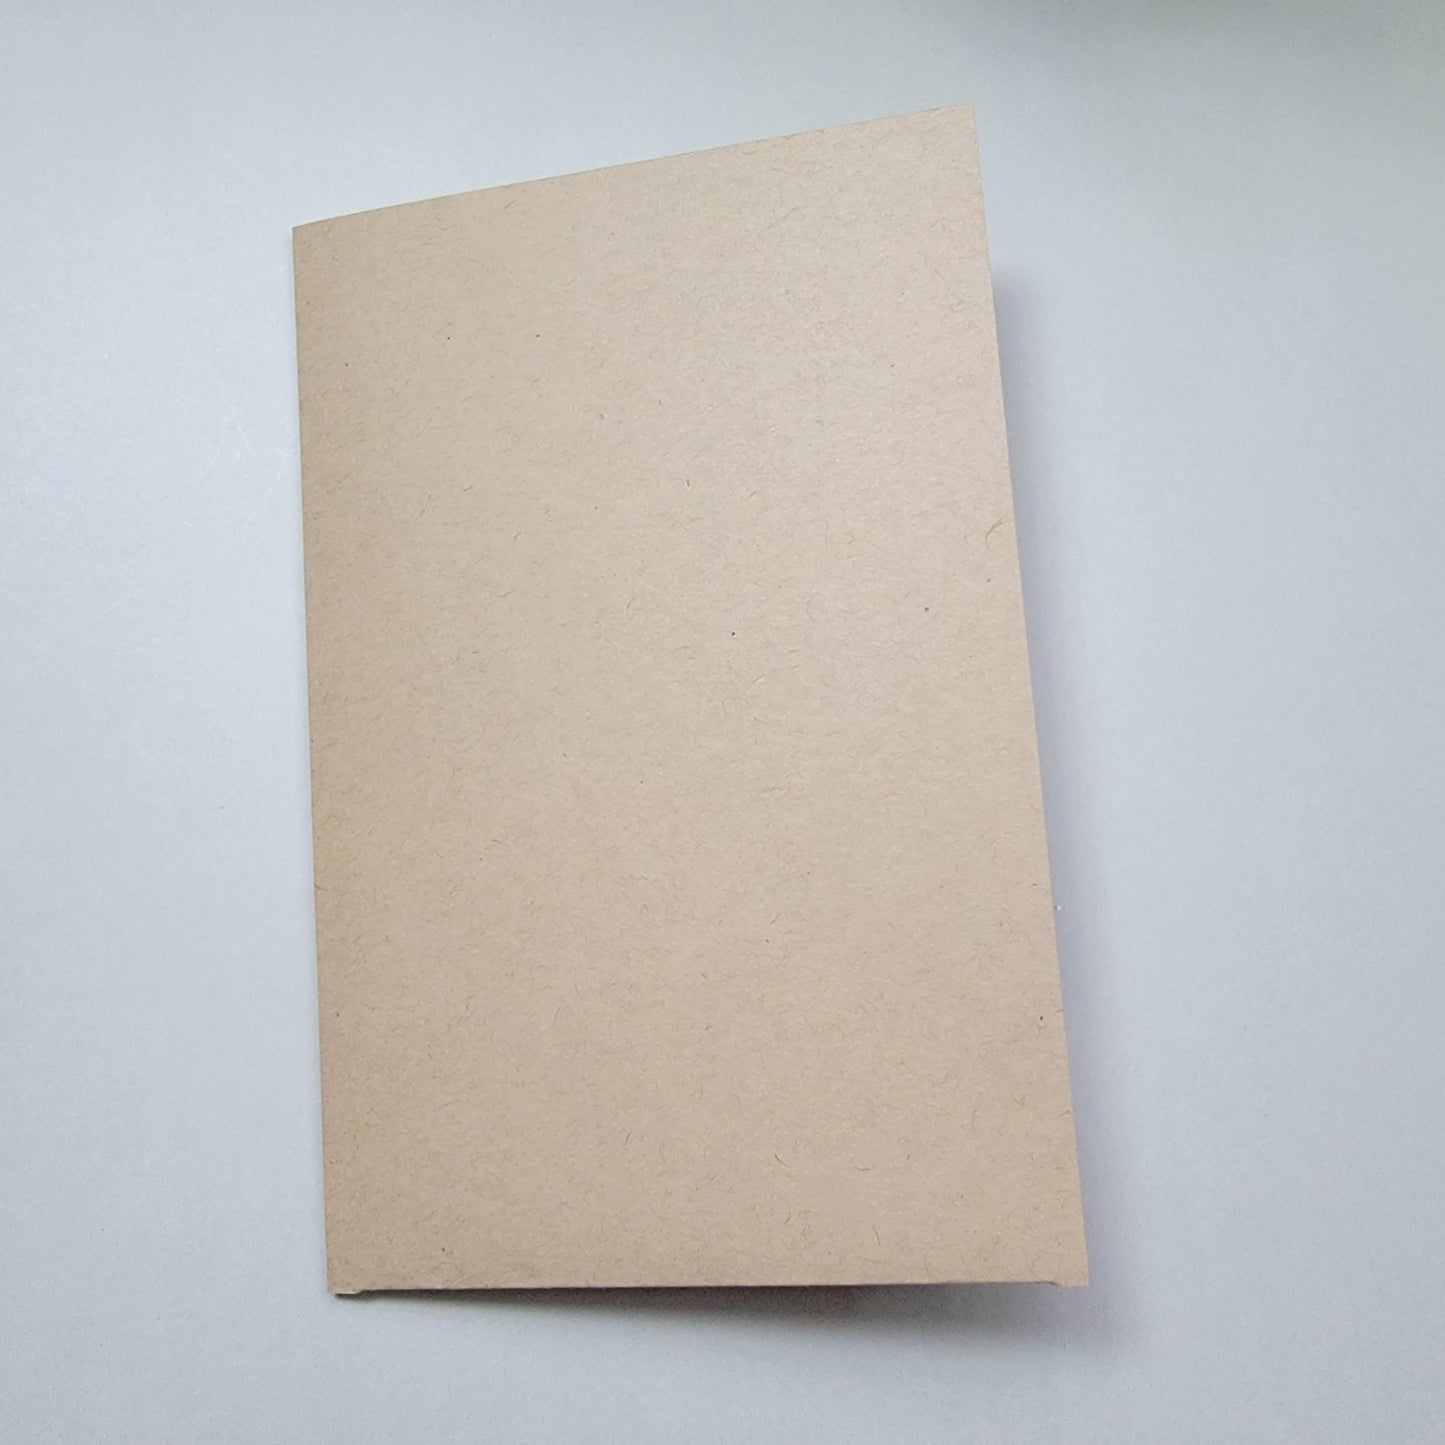 Ephemera Folio Template for Junk Journals, Small Junk Journal Folder Insert Template, Die Cut Scrapbook Journaling Supplies